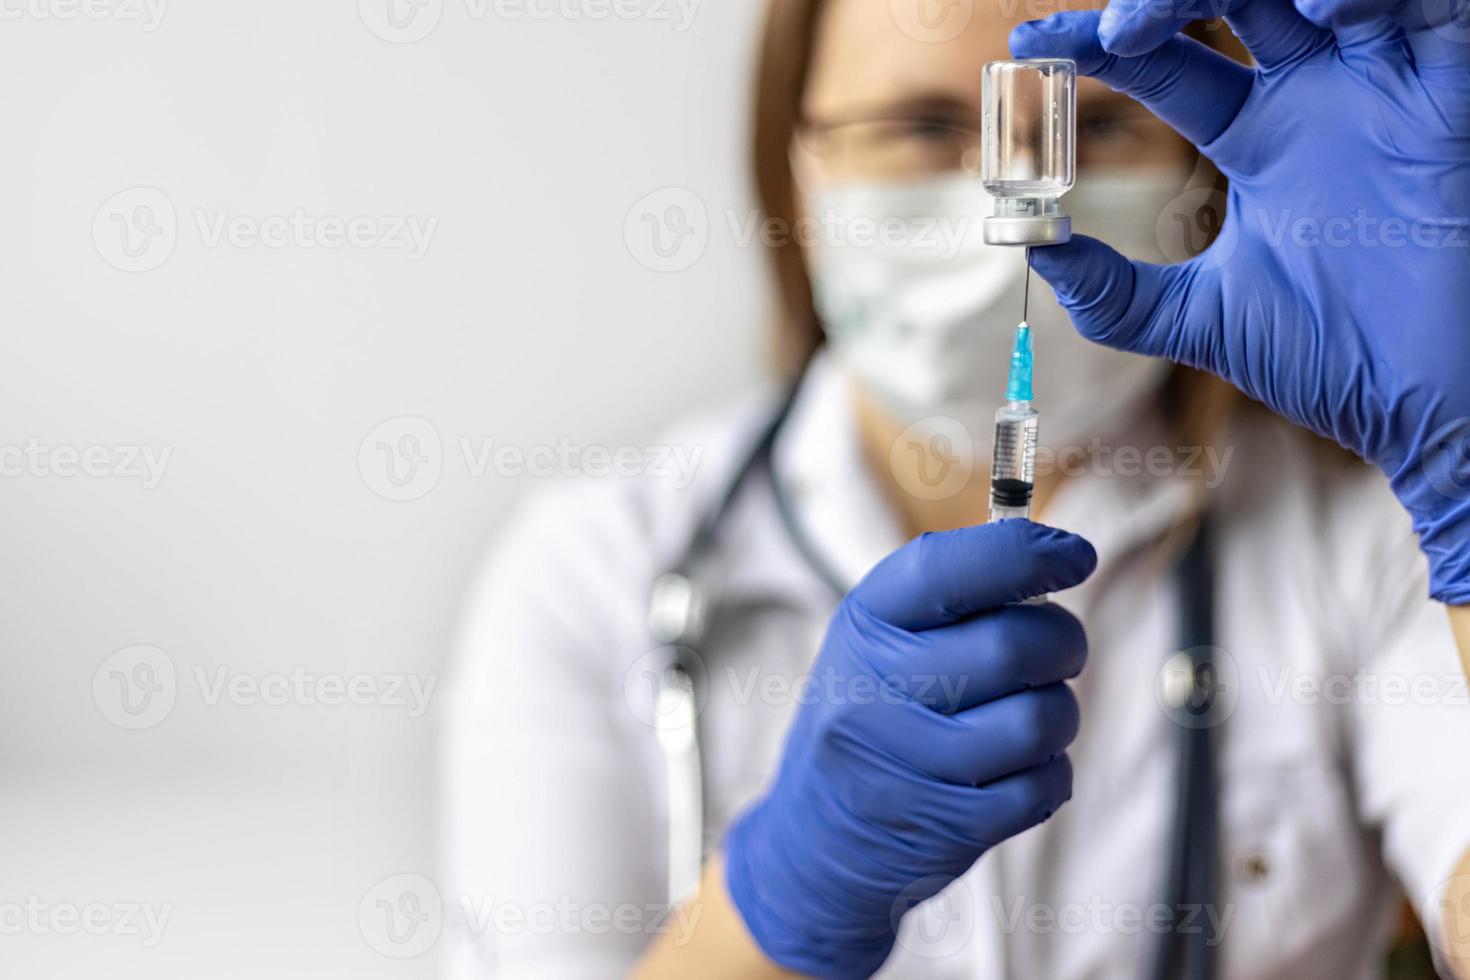 una dottoressa che indossa una maschera medica aspira il vaccino contro il coronavirus in una siringa presso la clinica. il concetto di vaccinazione, immunizzazione, prevenzione contro covid-19. foto